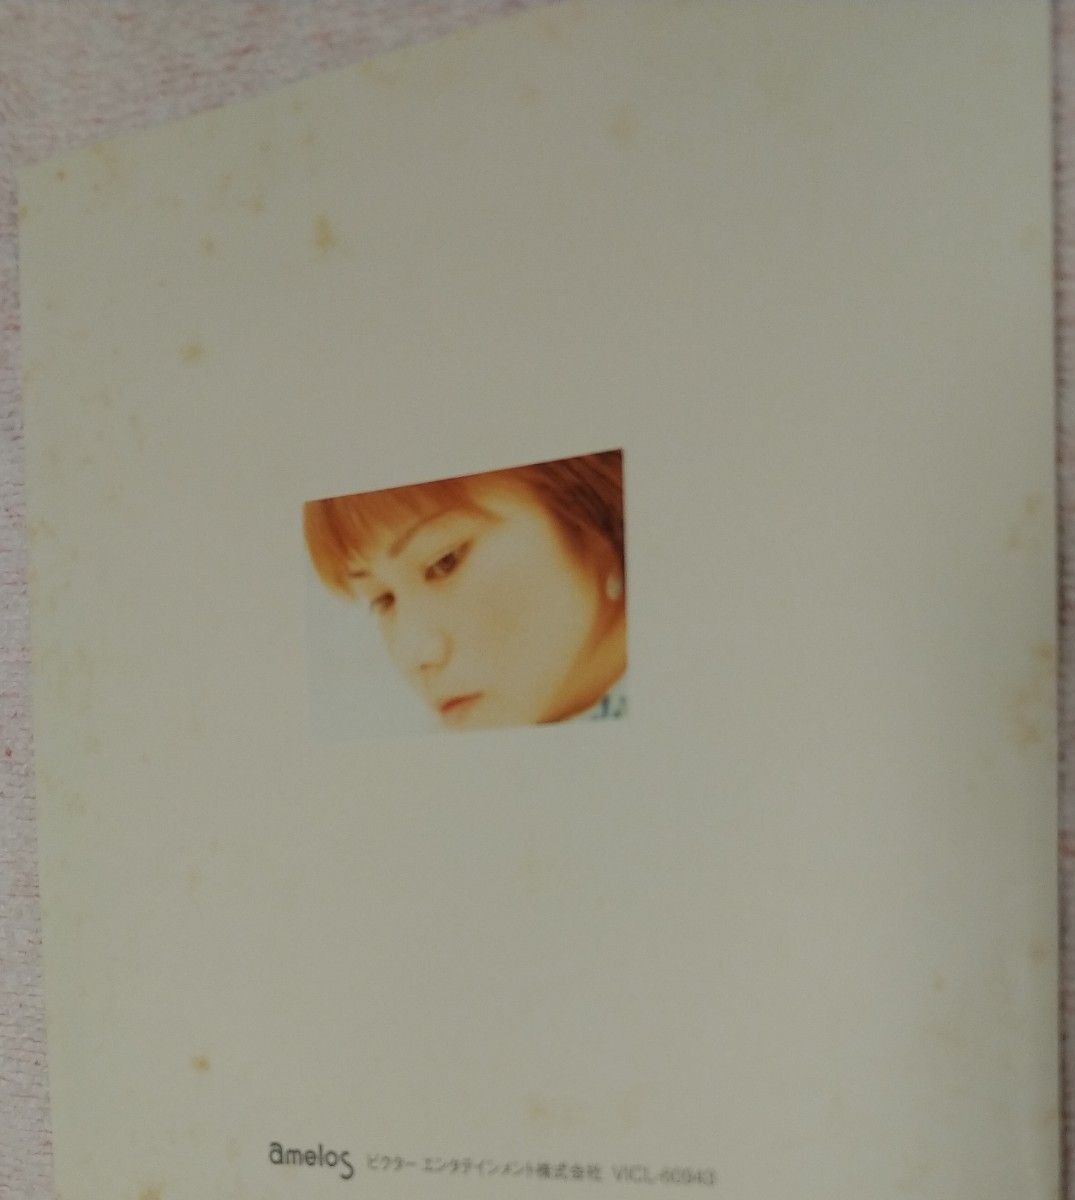 夏川りみ CD アルバム【てぃだ 〜太陽風ぬ想い〜】 02/9/21発売 オリコン加盟店